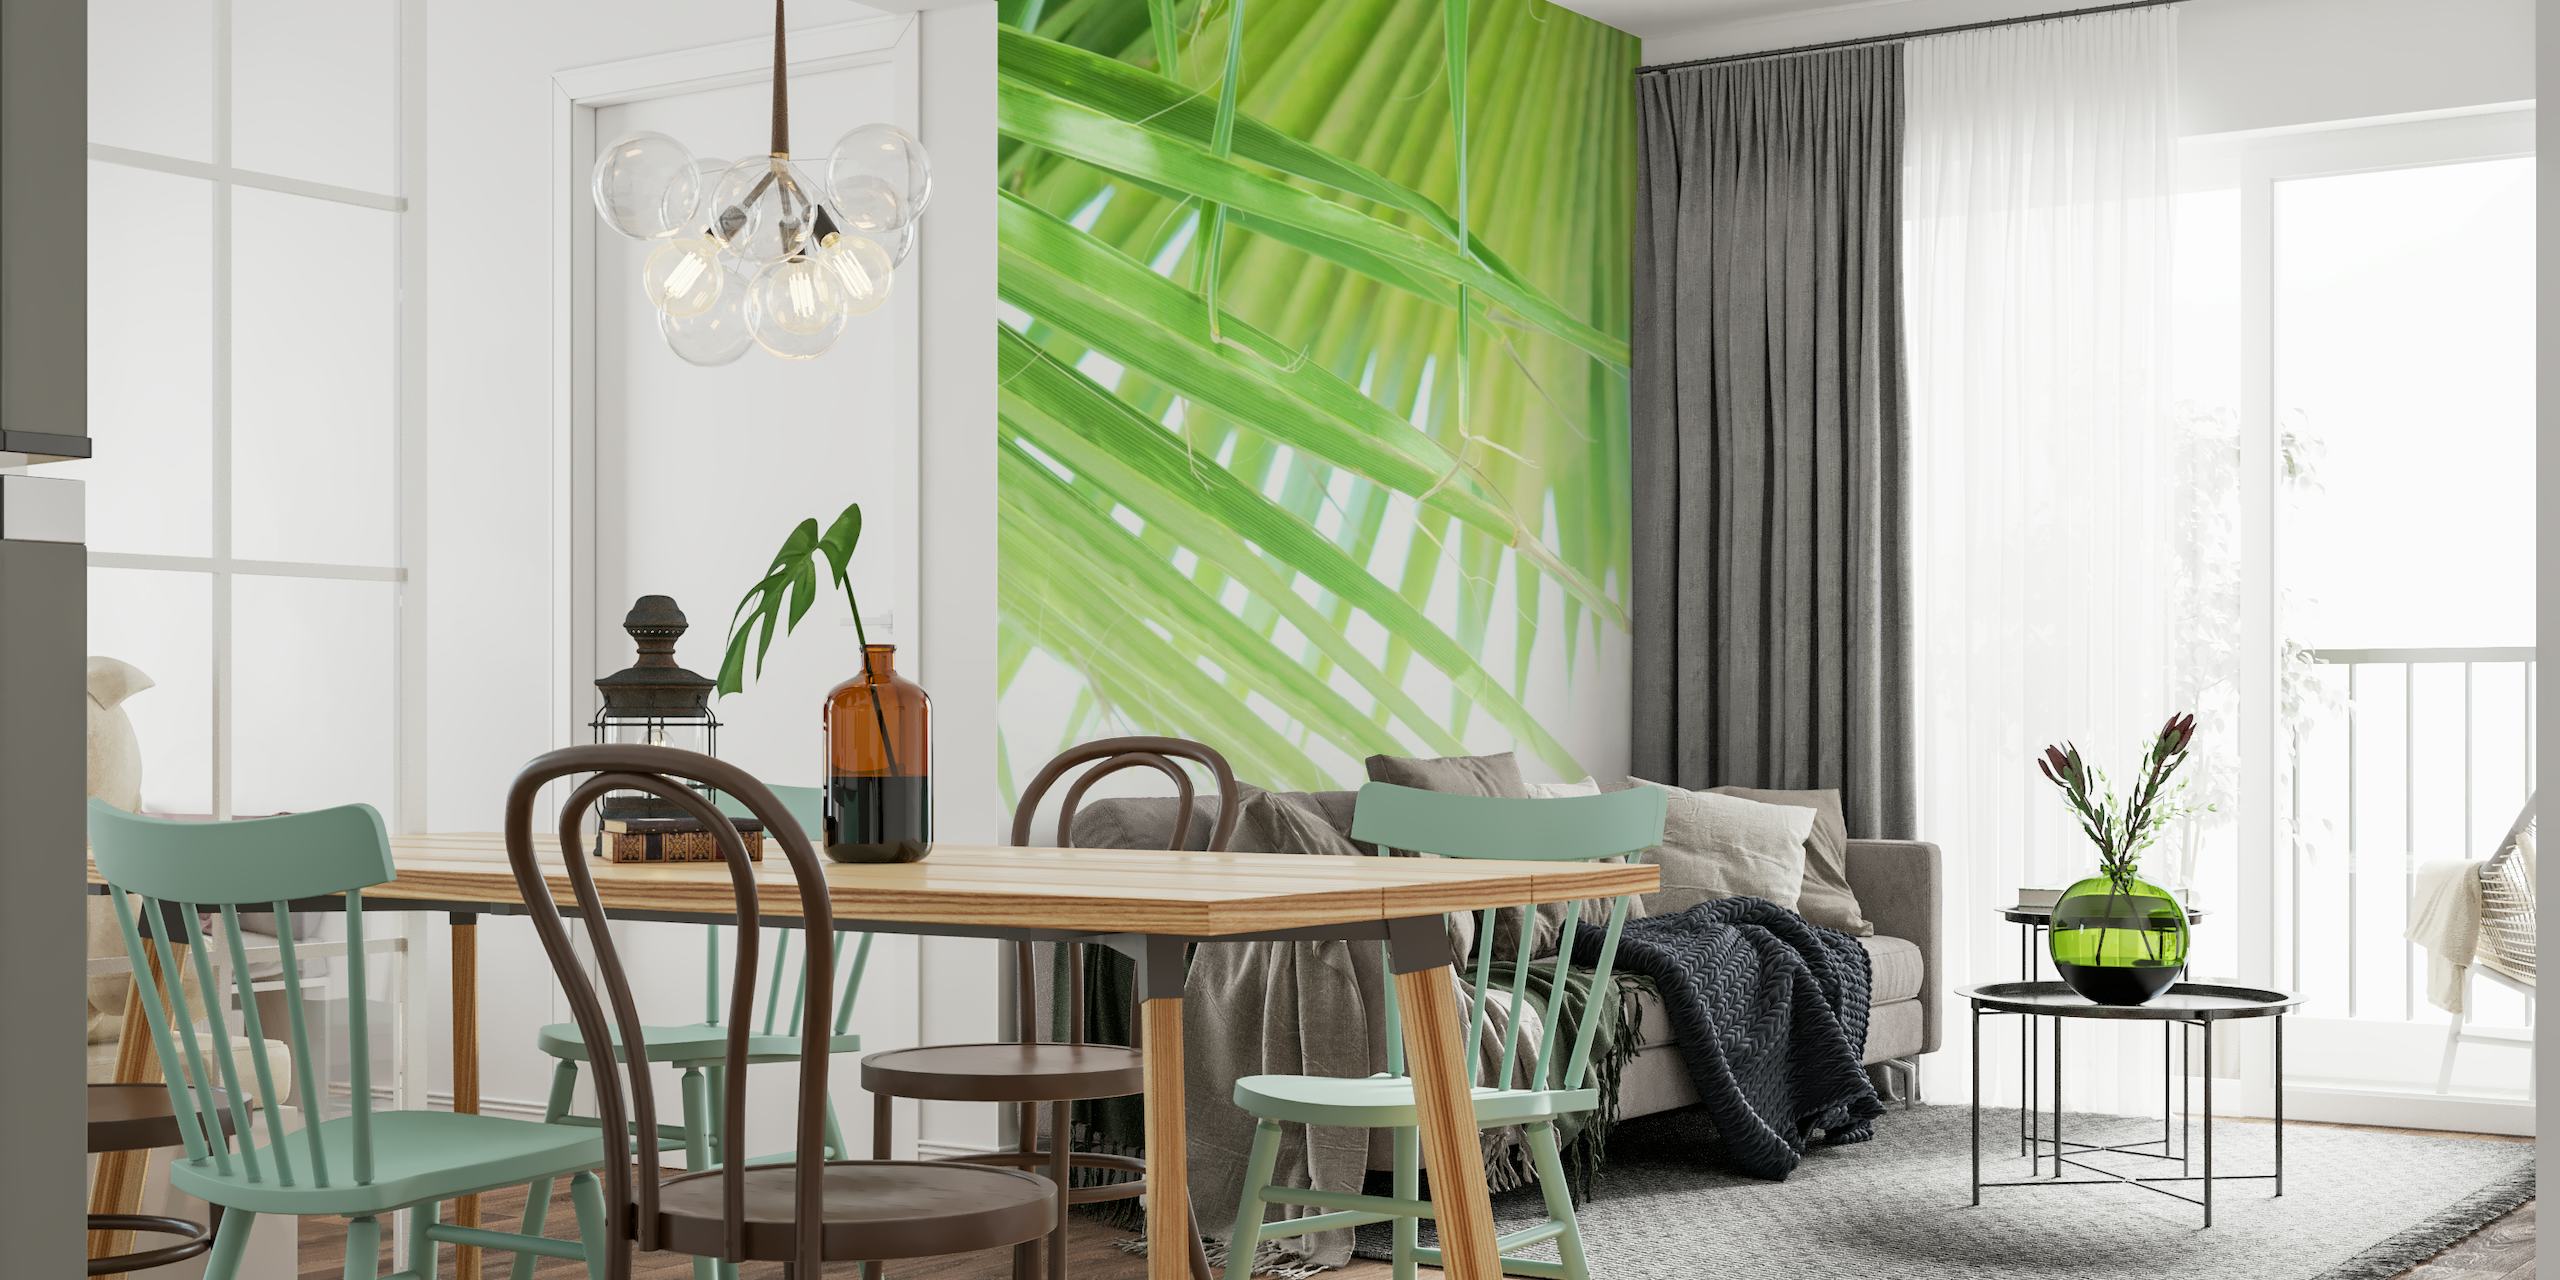 Grön solfjäder palmblad tapet för en uppfriskande inredning i rummet